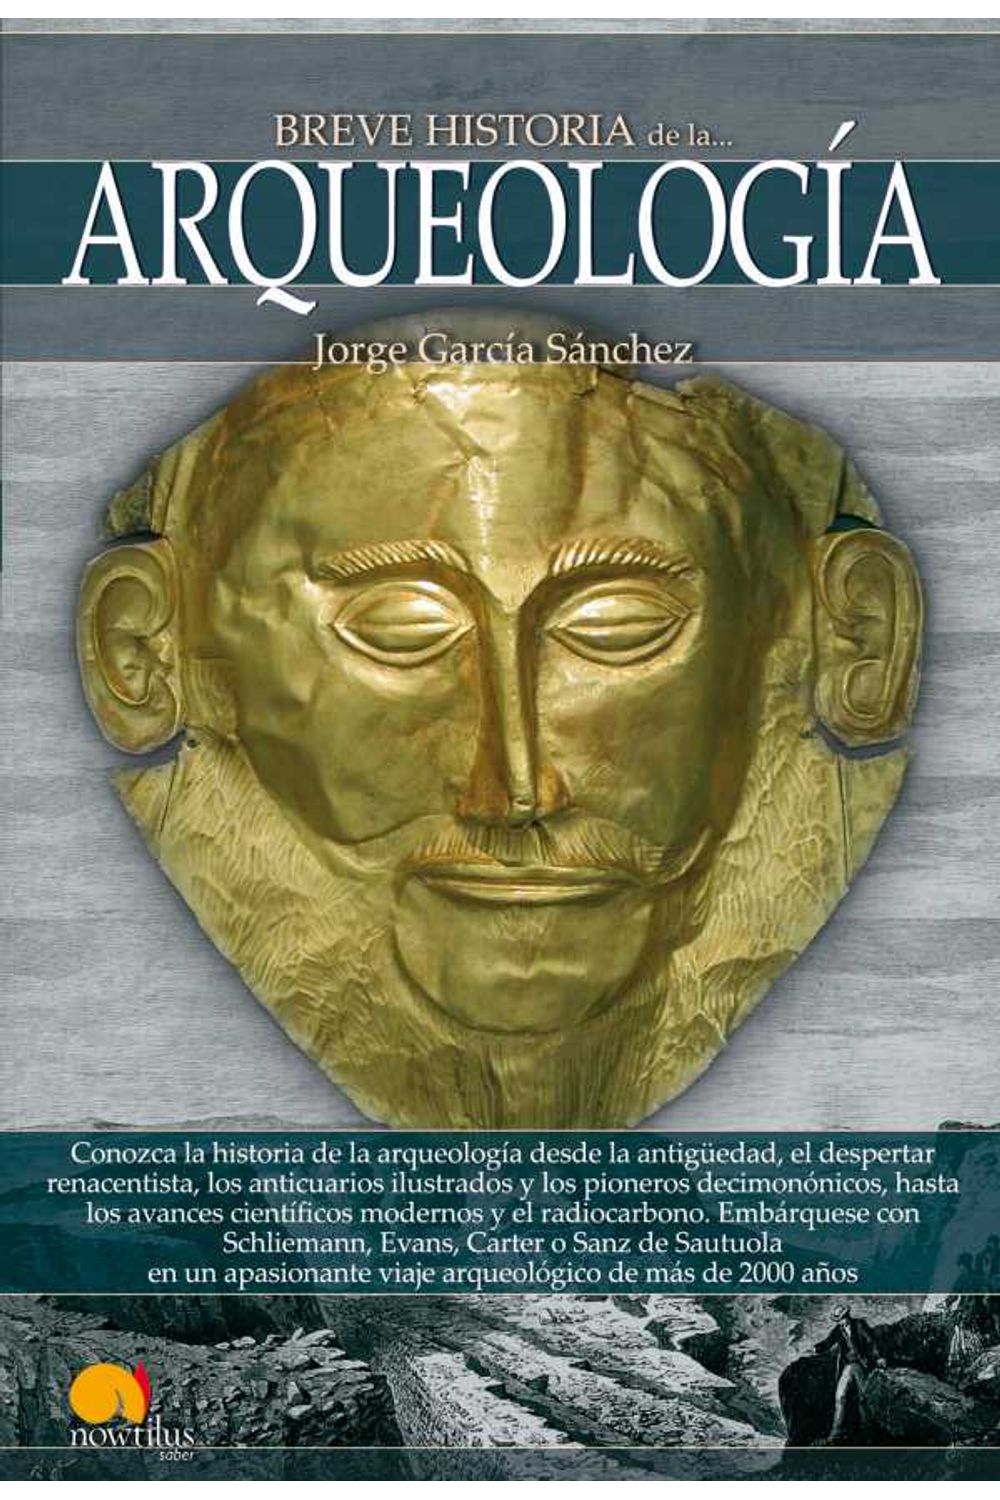 bw-breve-historia-de-la-arqueologiacutea-nowtilus-9788499675657